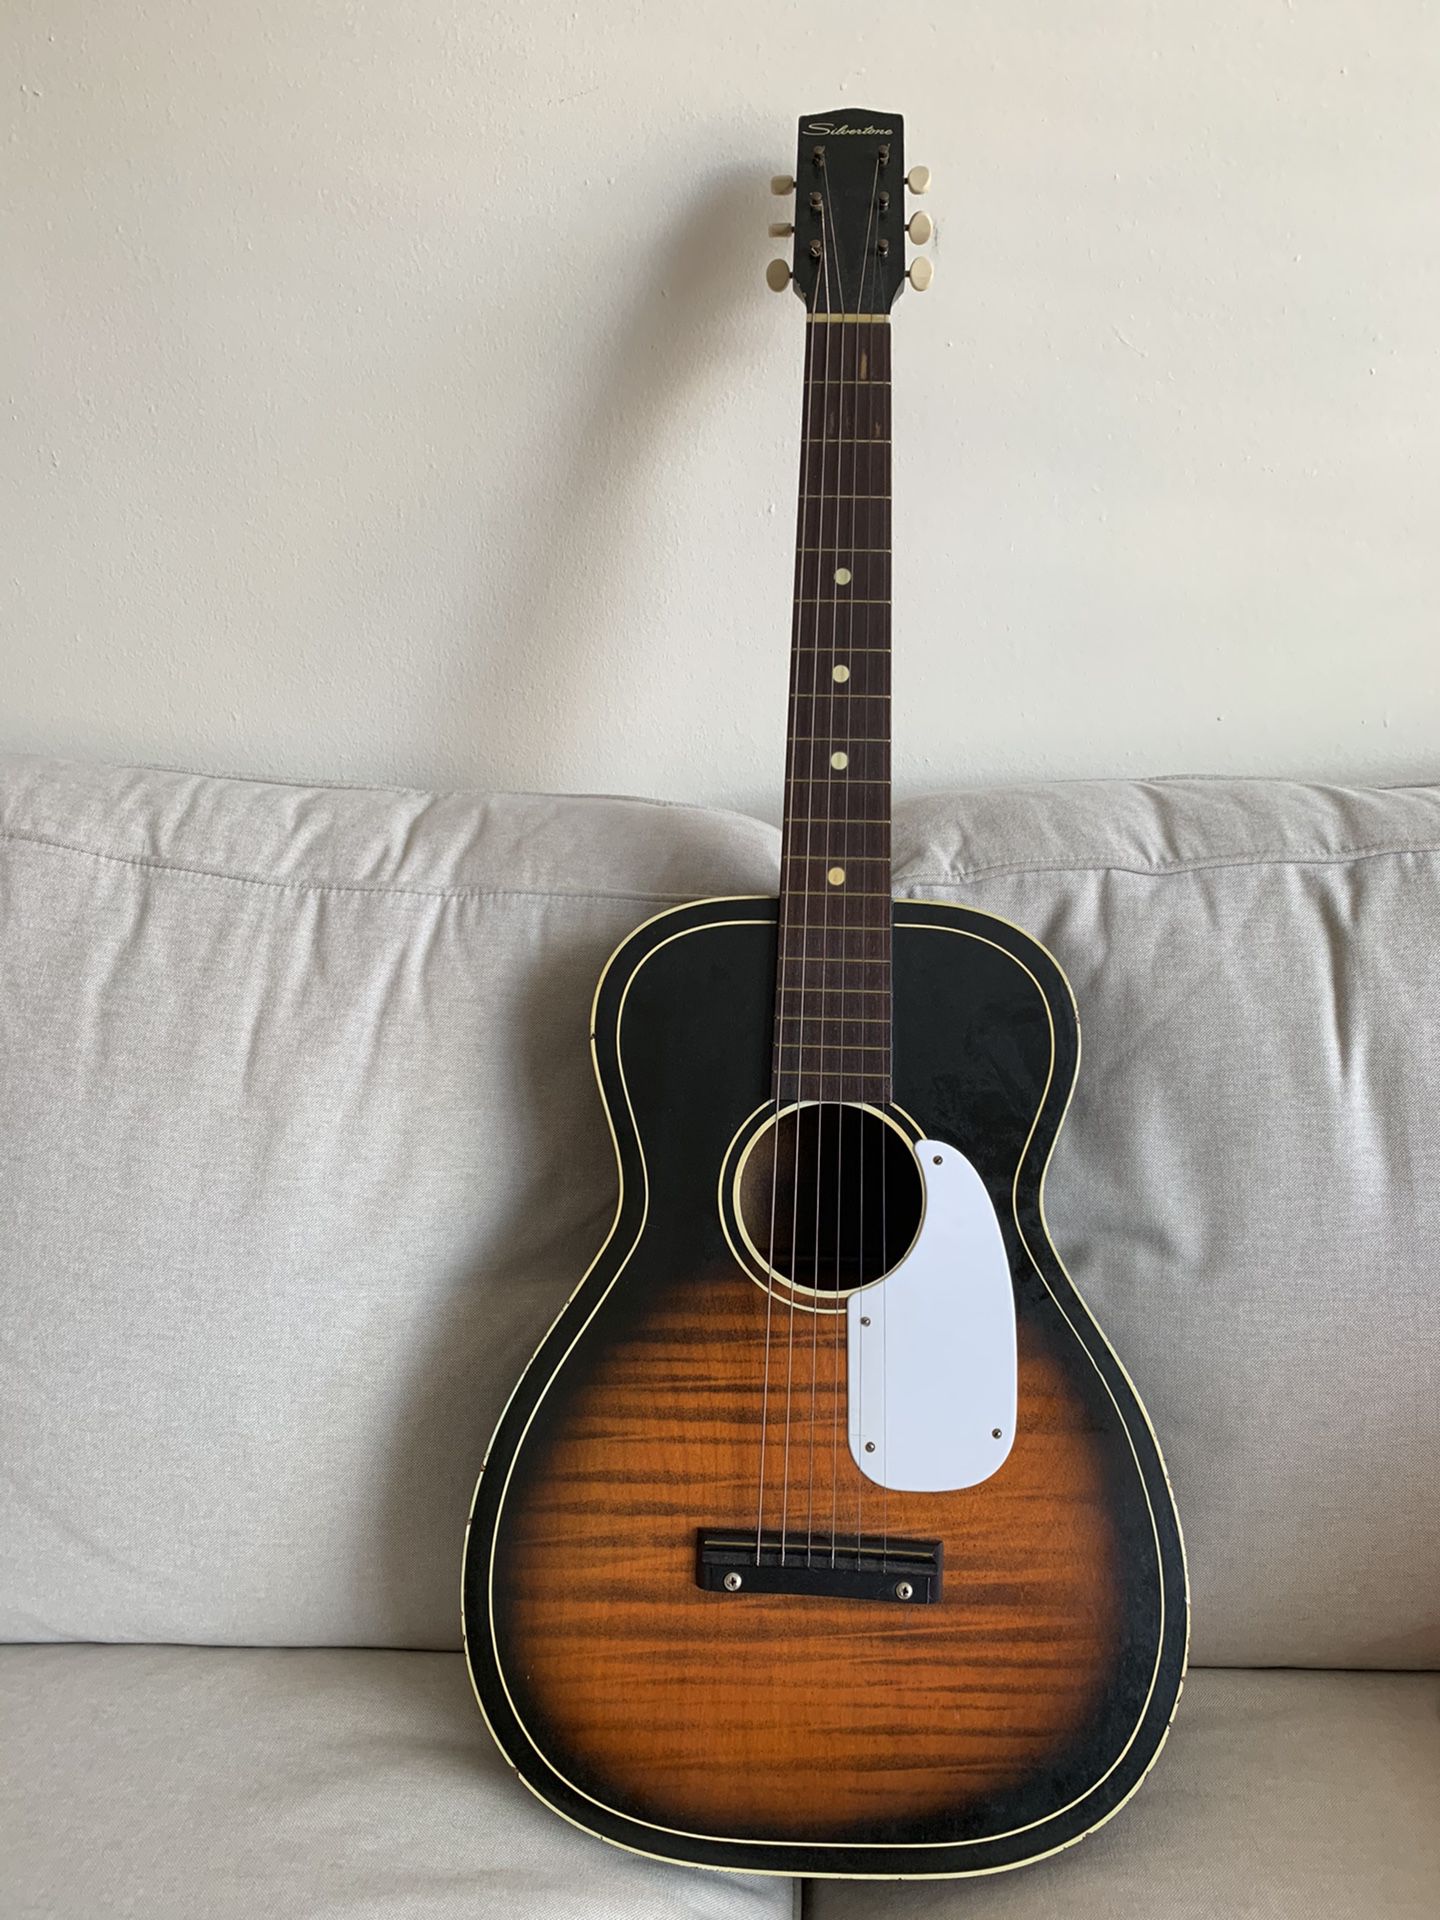 1965 Silvertone Acoustic Parlor Guitar